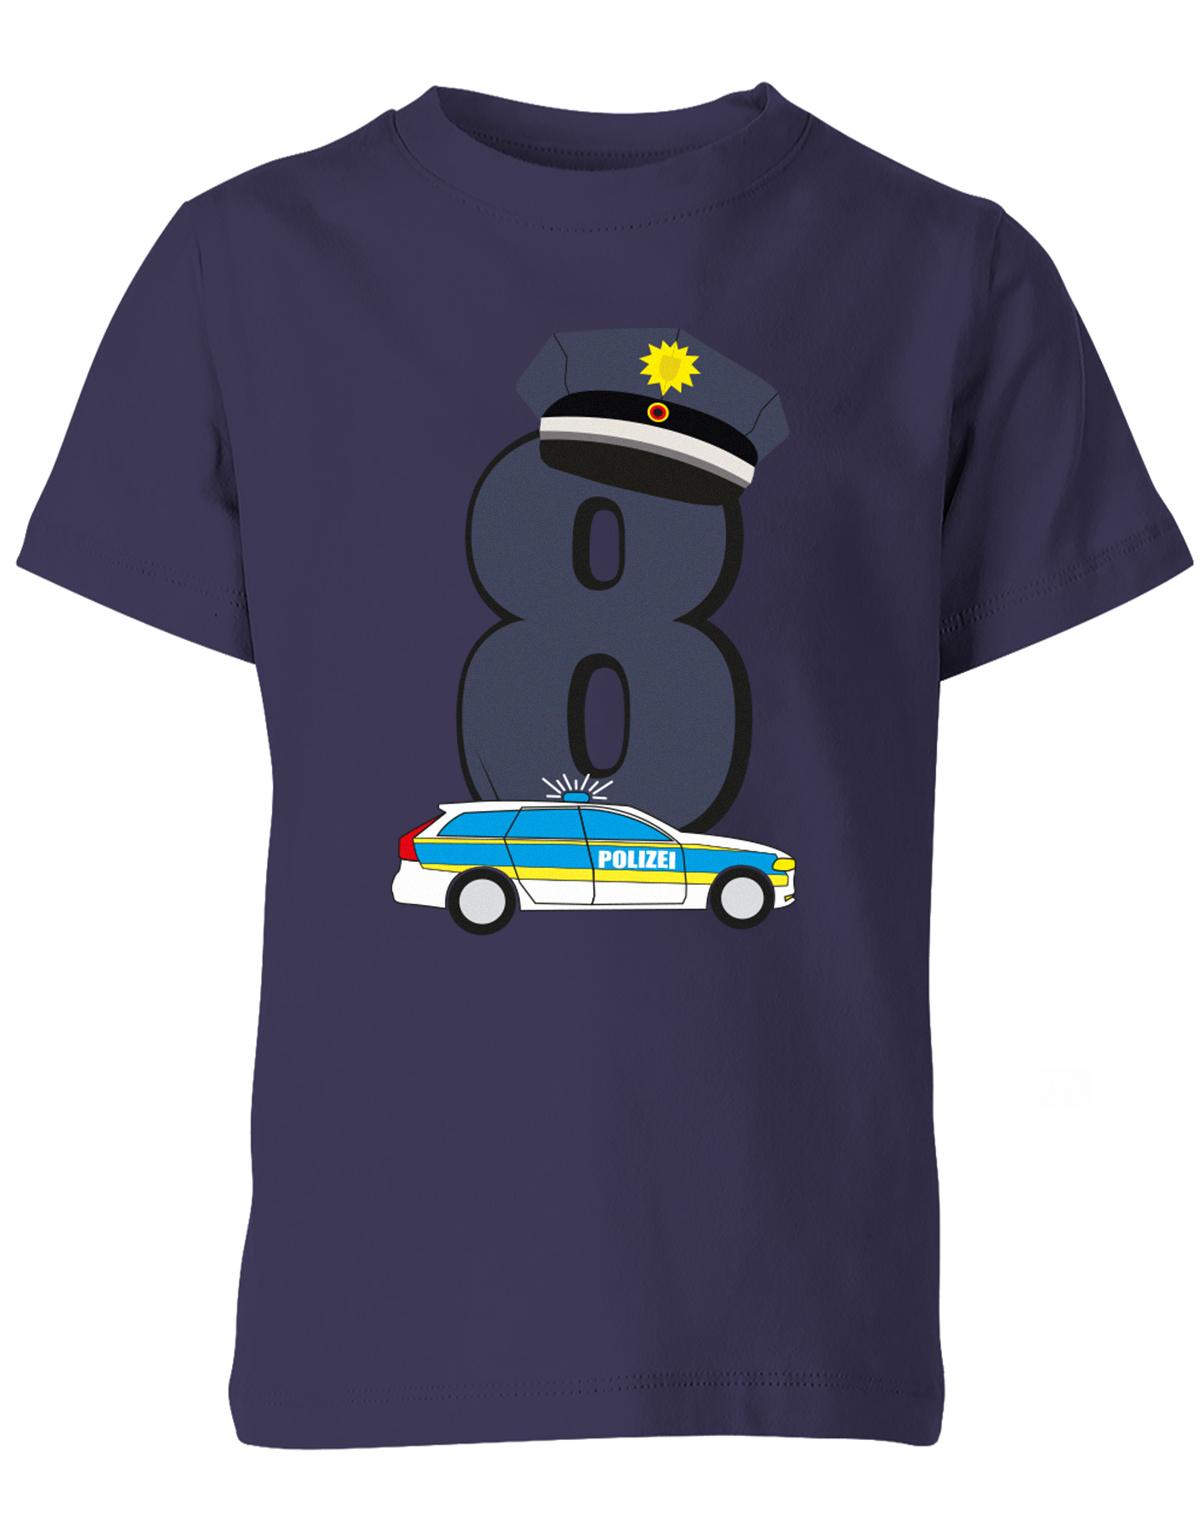 ich-bin-8-polizei-geburtstag-kinder-shirt-navy